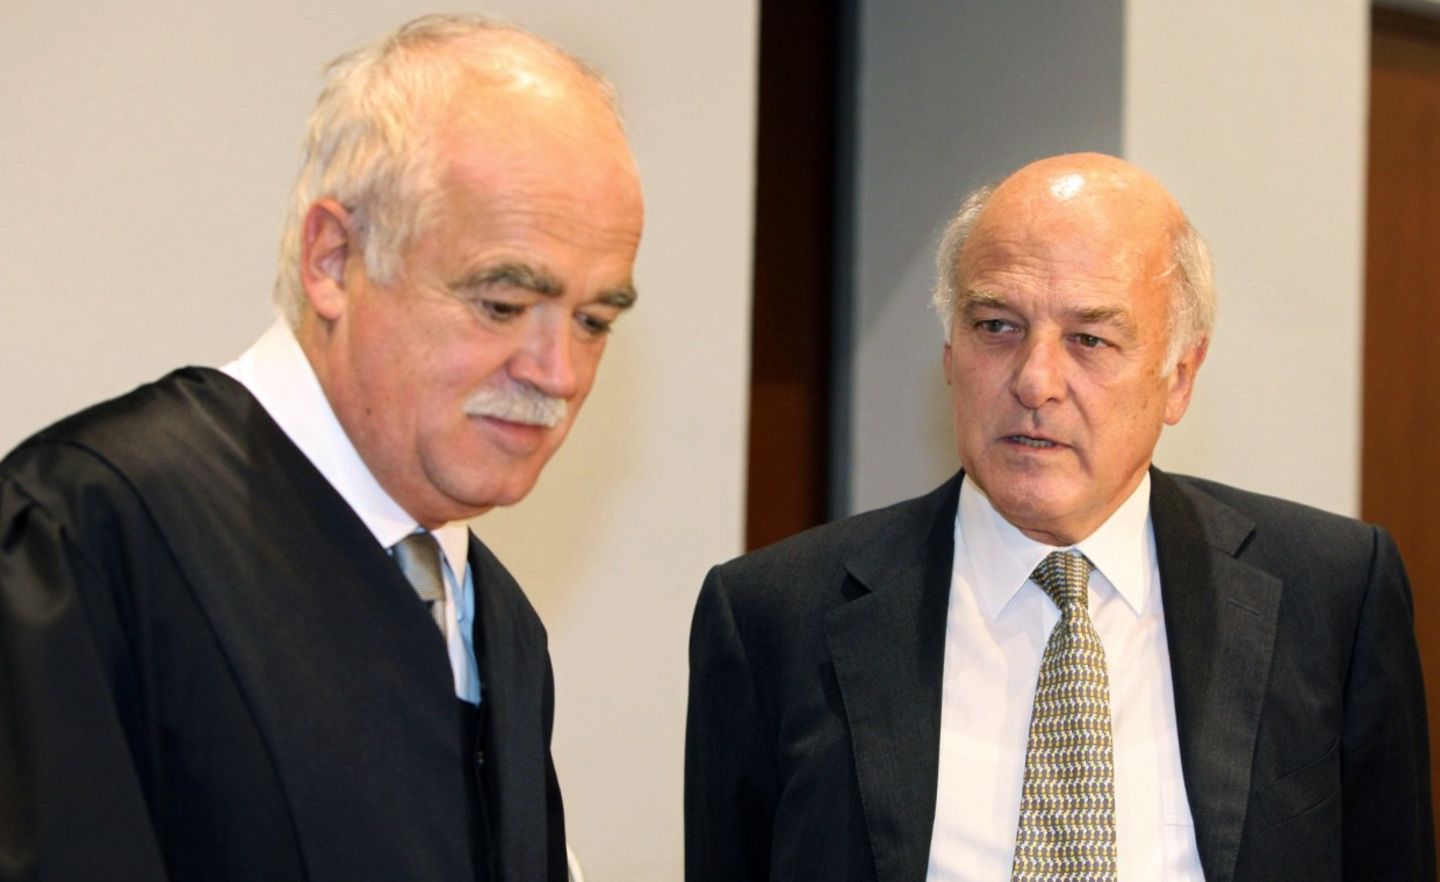 Verteidiger Peter Gauweiler (links) und der früheren Bankier Karl Gerhard Schmidt unterhalten sich vor dem Prozess vor dem Landgericht Hof. Schmidt musste sich 2006 wegen Betrugs in 232 Fällen und einem Fall der Untreue verantworten